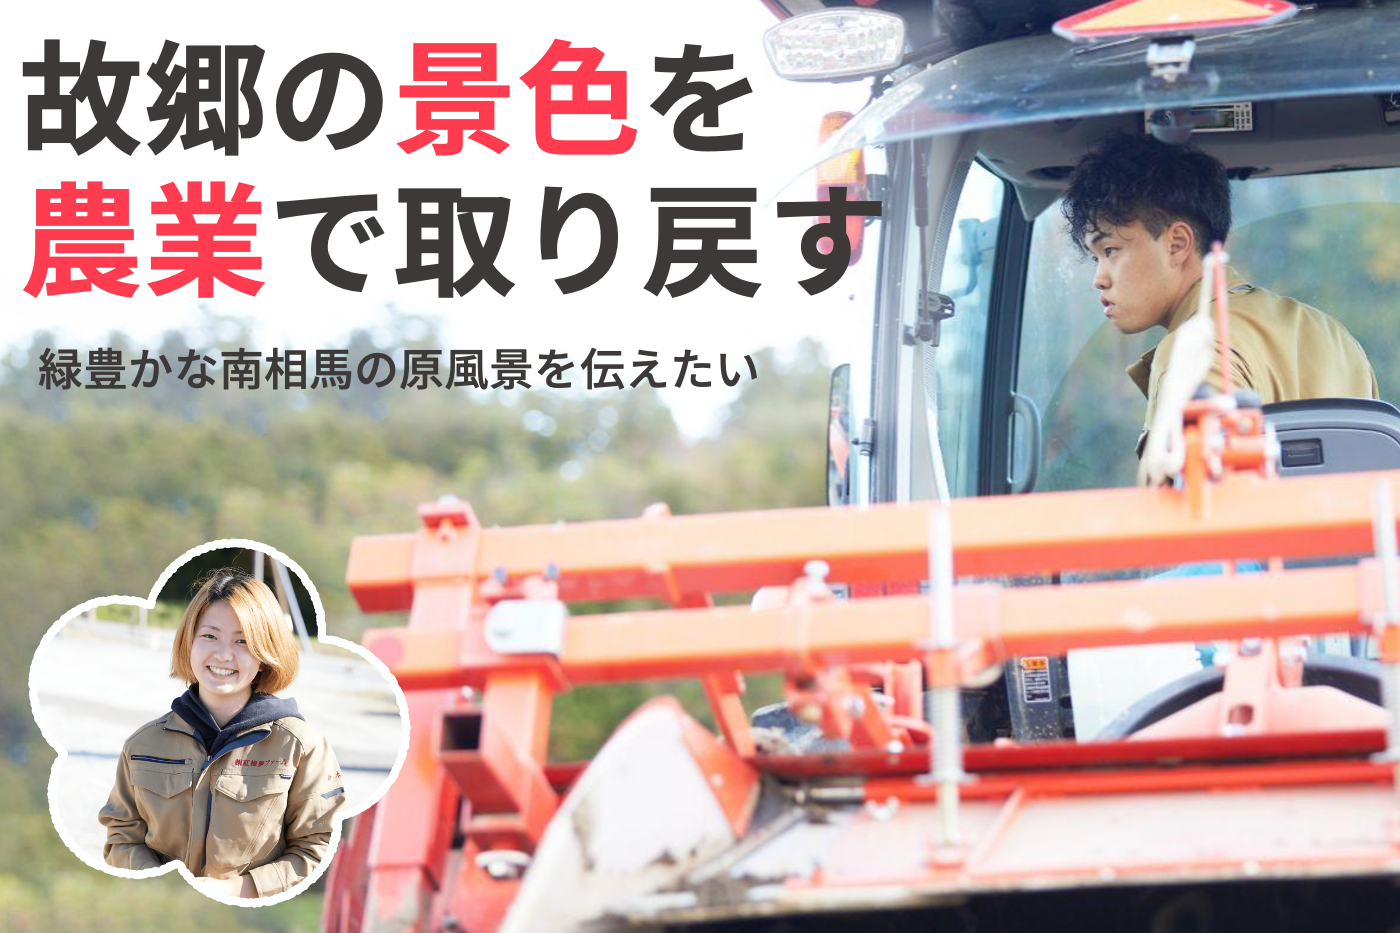 福島県南相馬市、震災で途切れた故郷の景色の復活を目指し
農業に取り組む若者たちが10月6日クラウドファンディングを開始